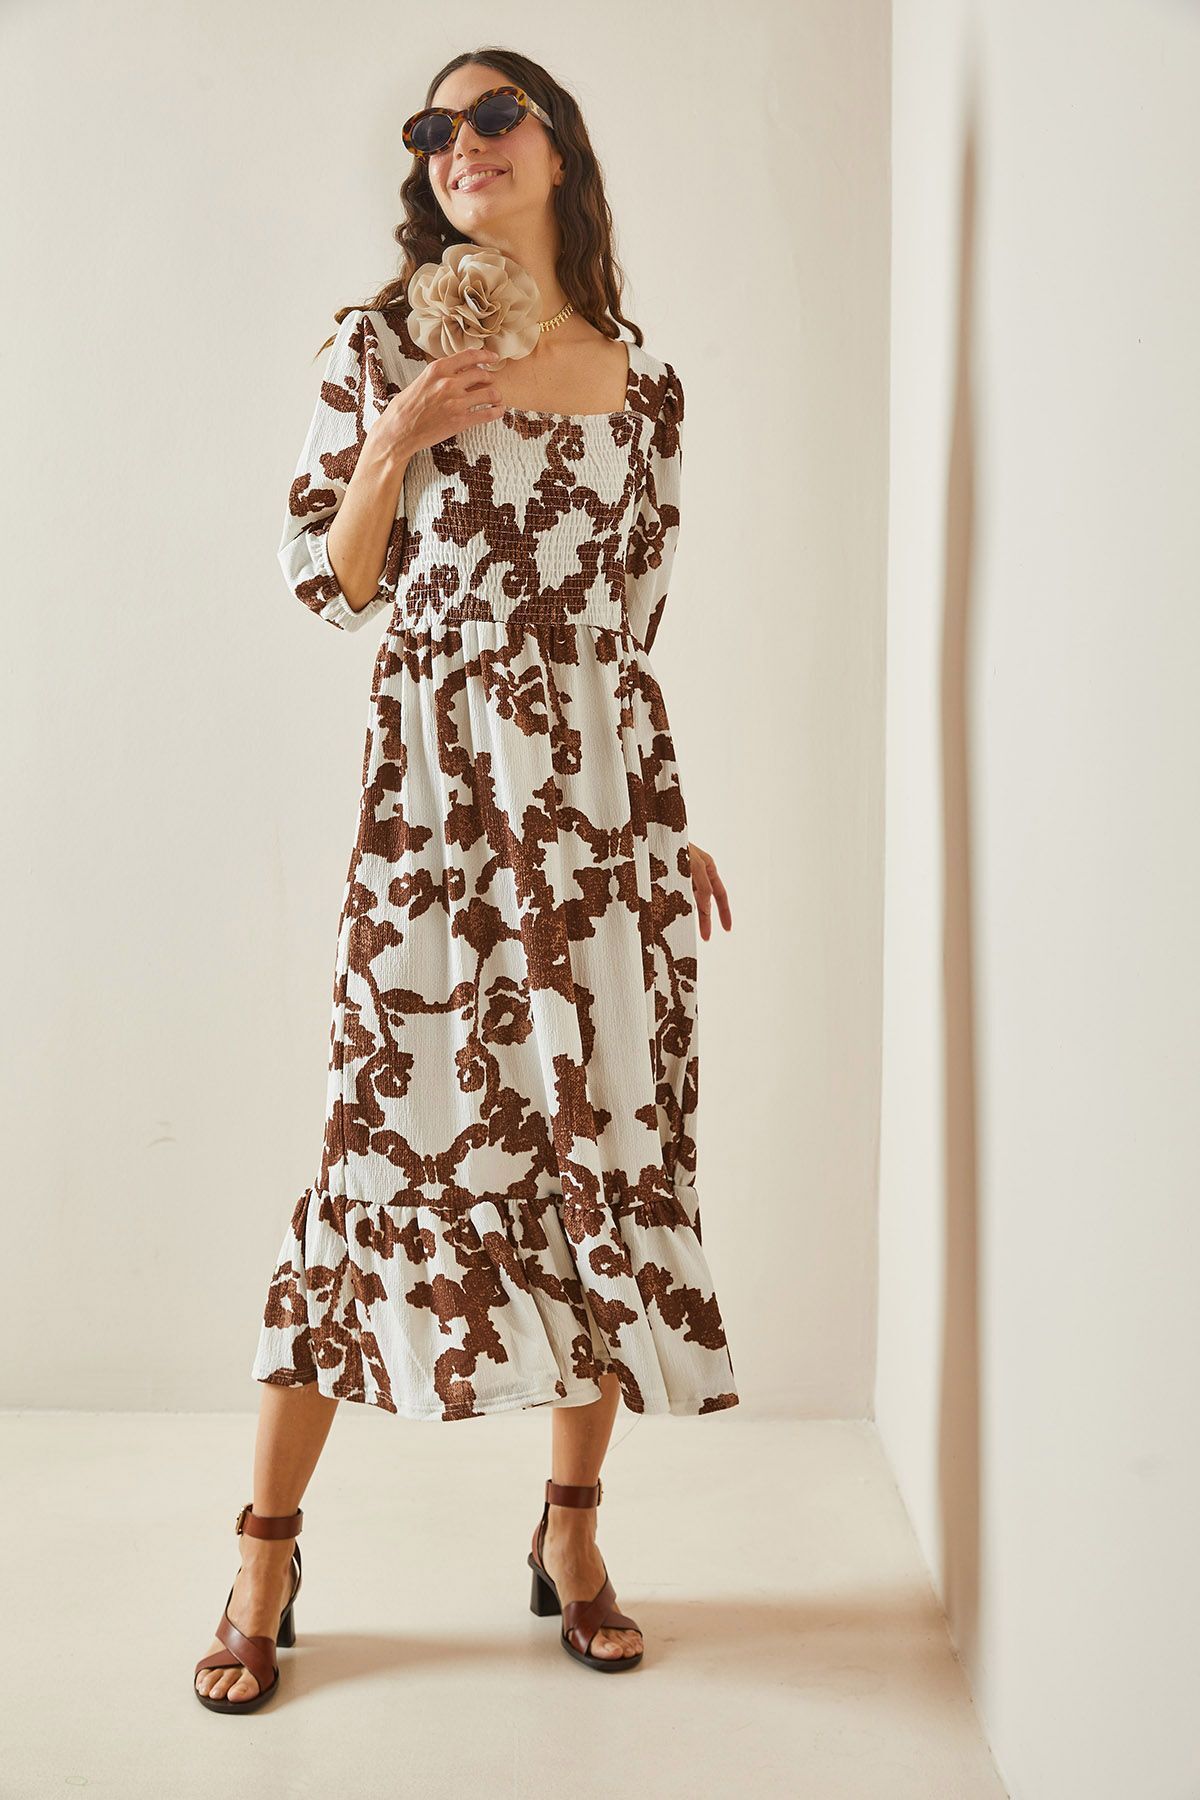 XHAN Kahverengi Desenli Gipe Detaylı Etek Ucu Fırfırlı Örme Elbise 5YXK6-48509-18